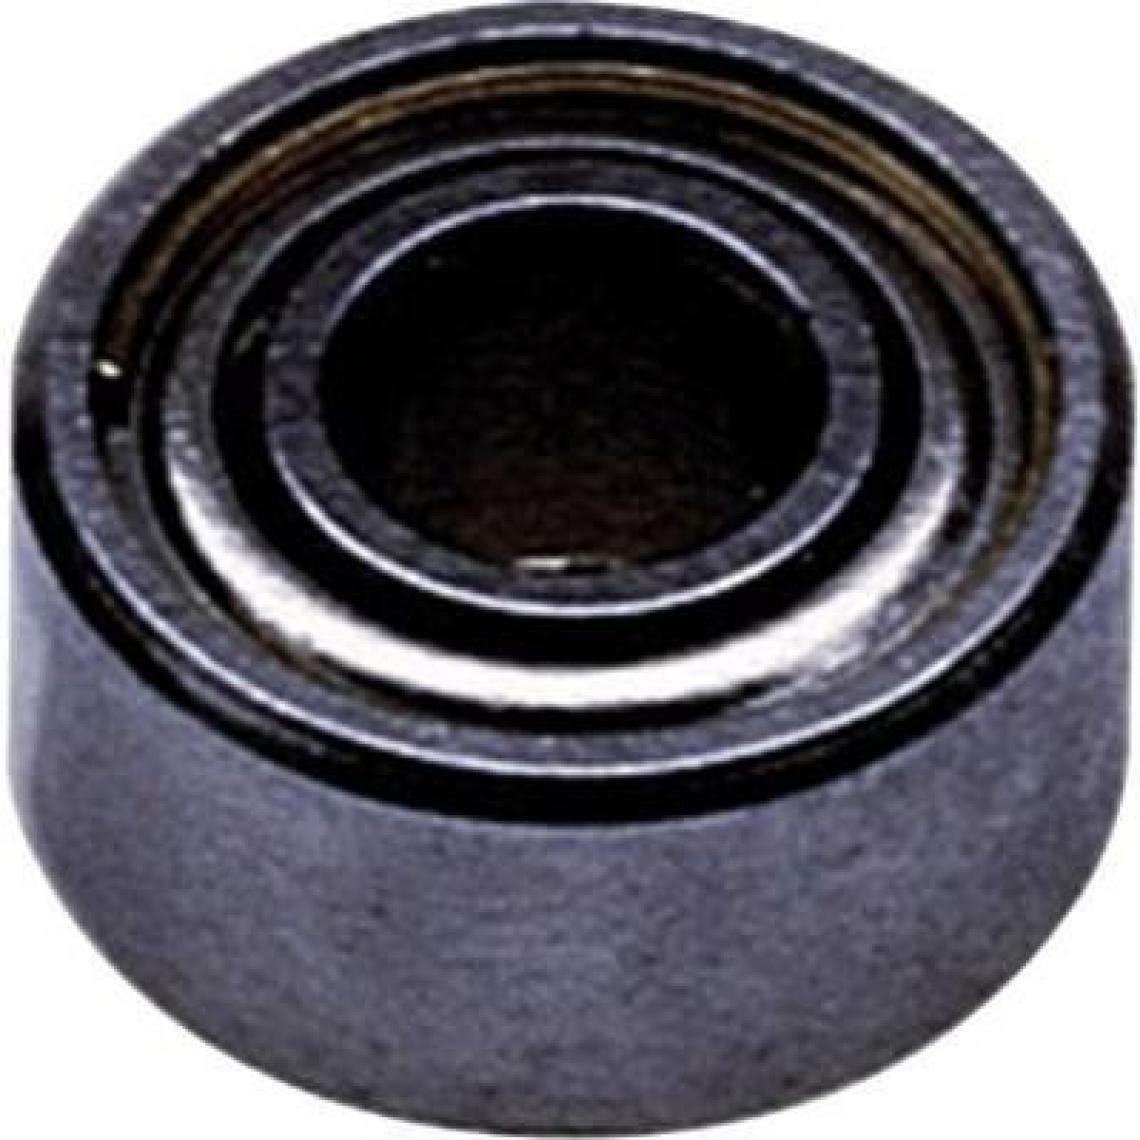 Inconnu - Reely Roulement Radial acier inoxydable en extérieur Diamètreâ€¯: 3 mm intérieur de diamètreâ€¯: 6 mm vitesse (Max.)â€¯: 80000 tr/min - Accessoires et pièces